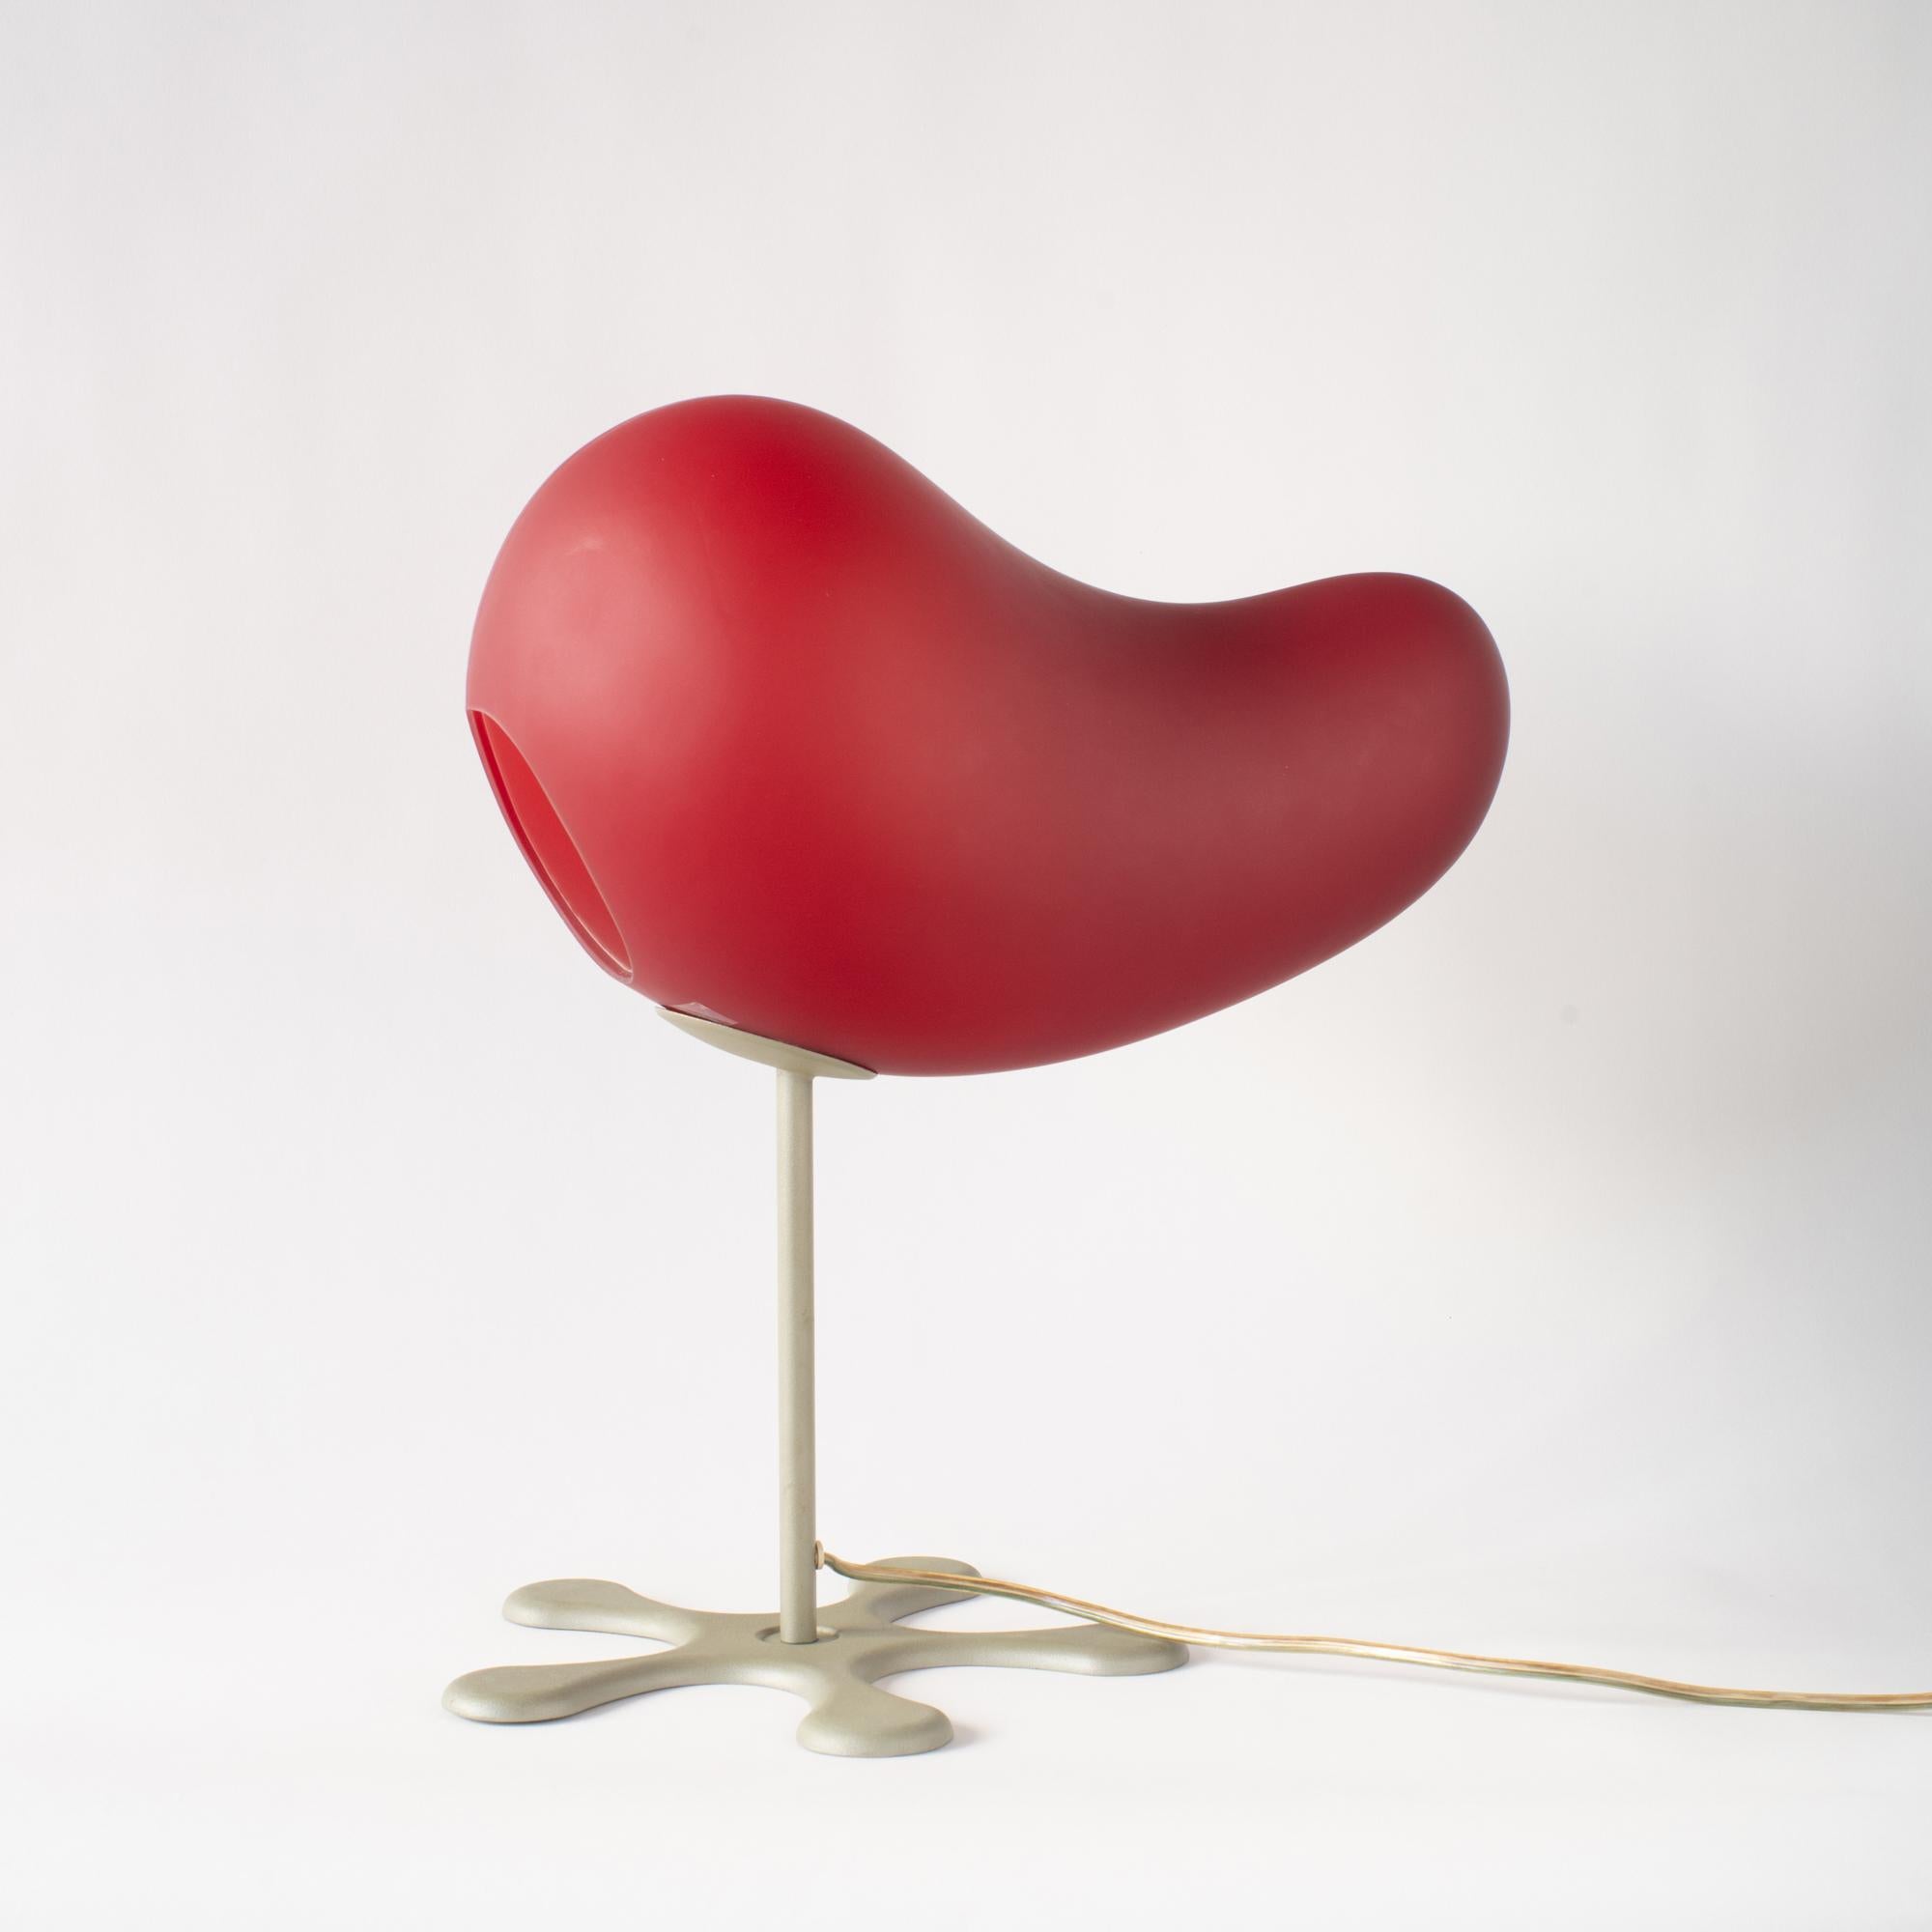 Tischleuchte in Rot.  Es wurde im Jahr 2000 von Aldo Cibic entworfen. Der Schirm ist aus Glas gefertigt. Les ist aus lackiertem Stahl gefertigt.
Das ist der Stil der Jahr-2000-Einrichtung und des Designs. Auch ein wirklich tolles Beispiel aus dieser